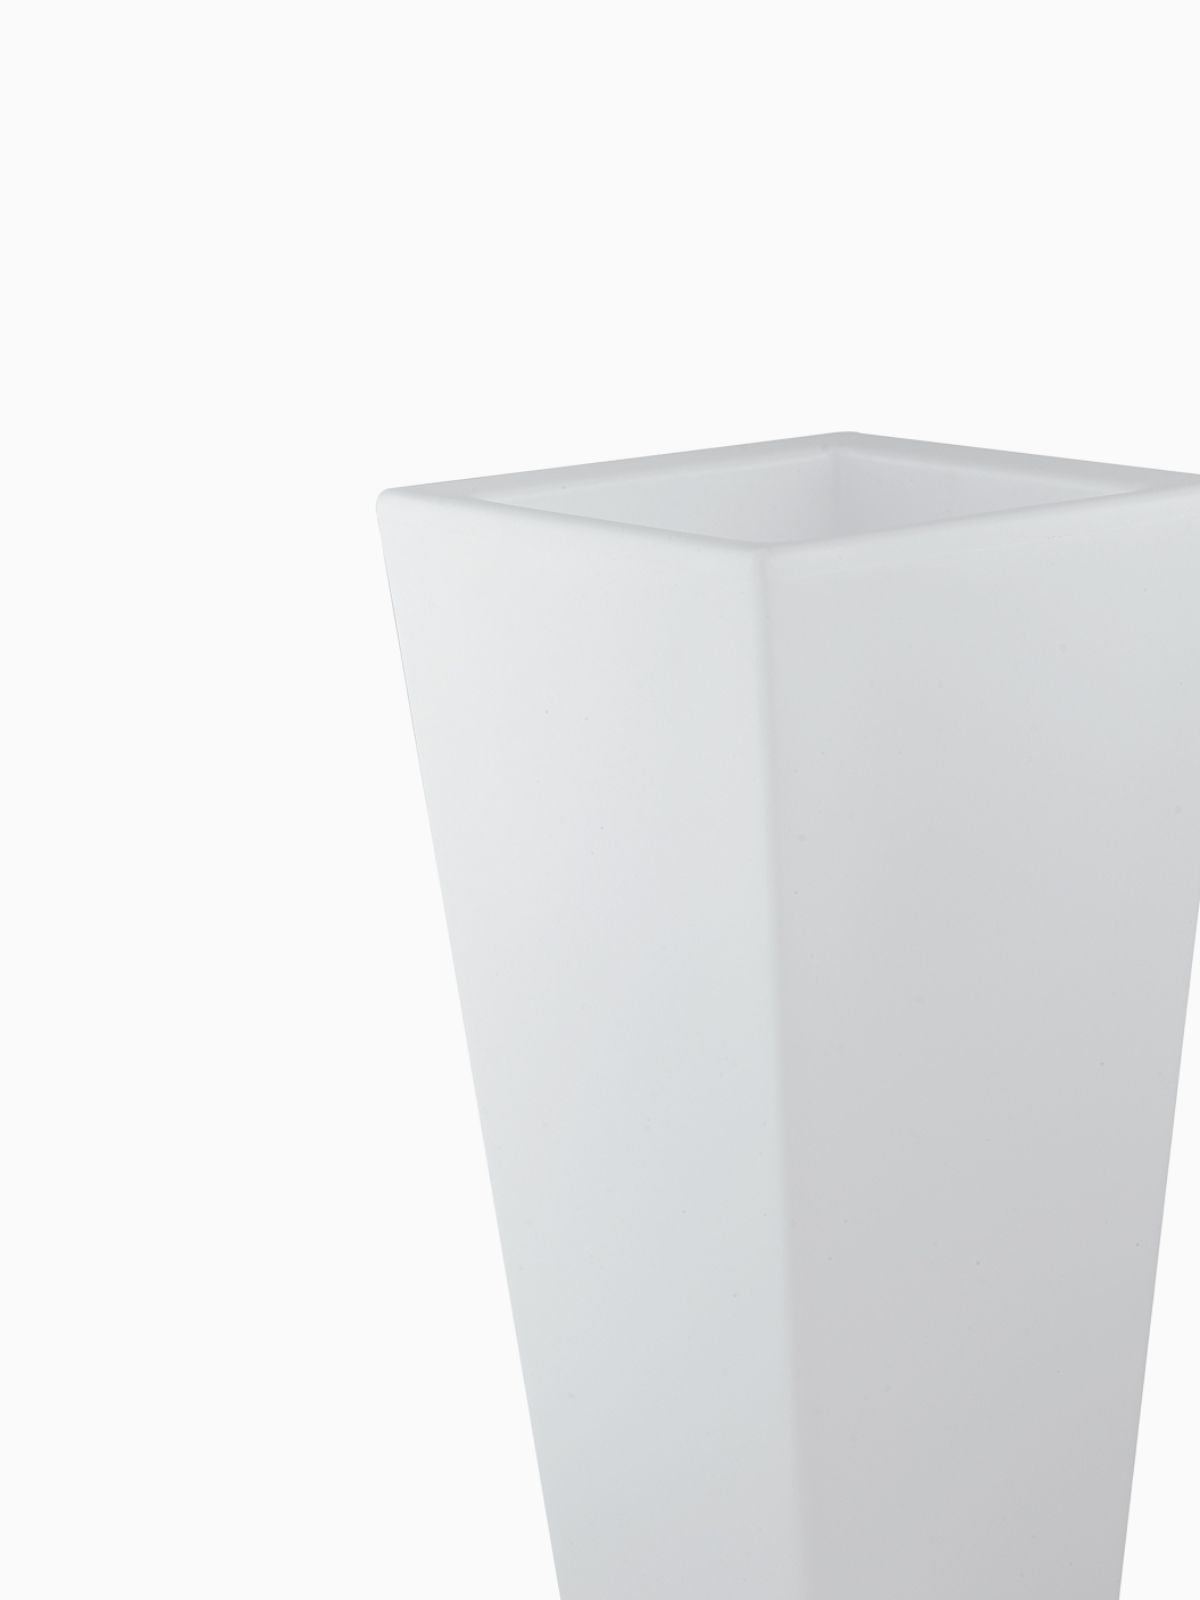 Vaso da esterno quadrato a LED Geco in polietilene, colore bianco 90 cm.-2